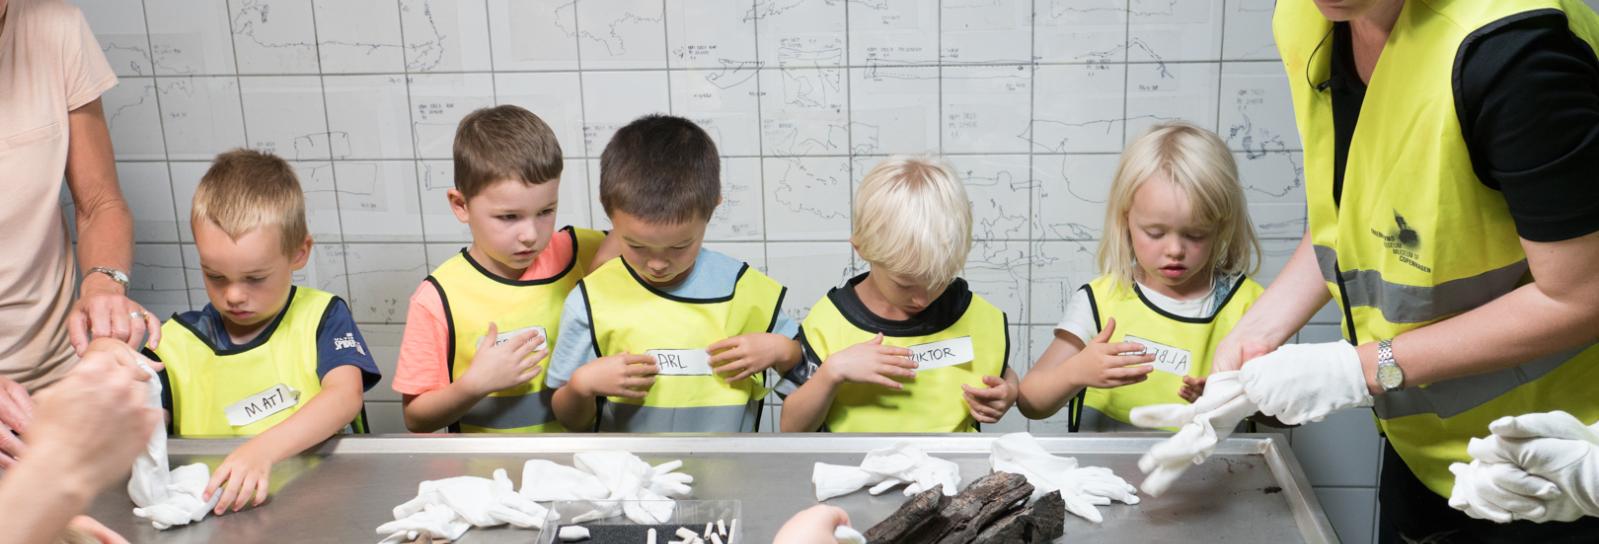 Dagtilbudsbørn undersøger arkæologiske fund i museets fundkælder